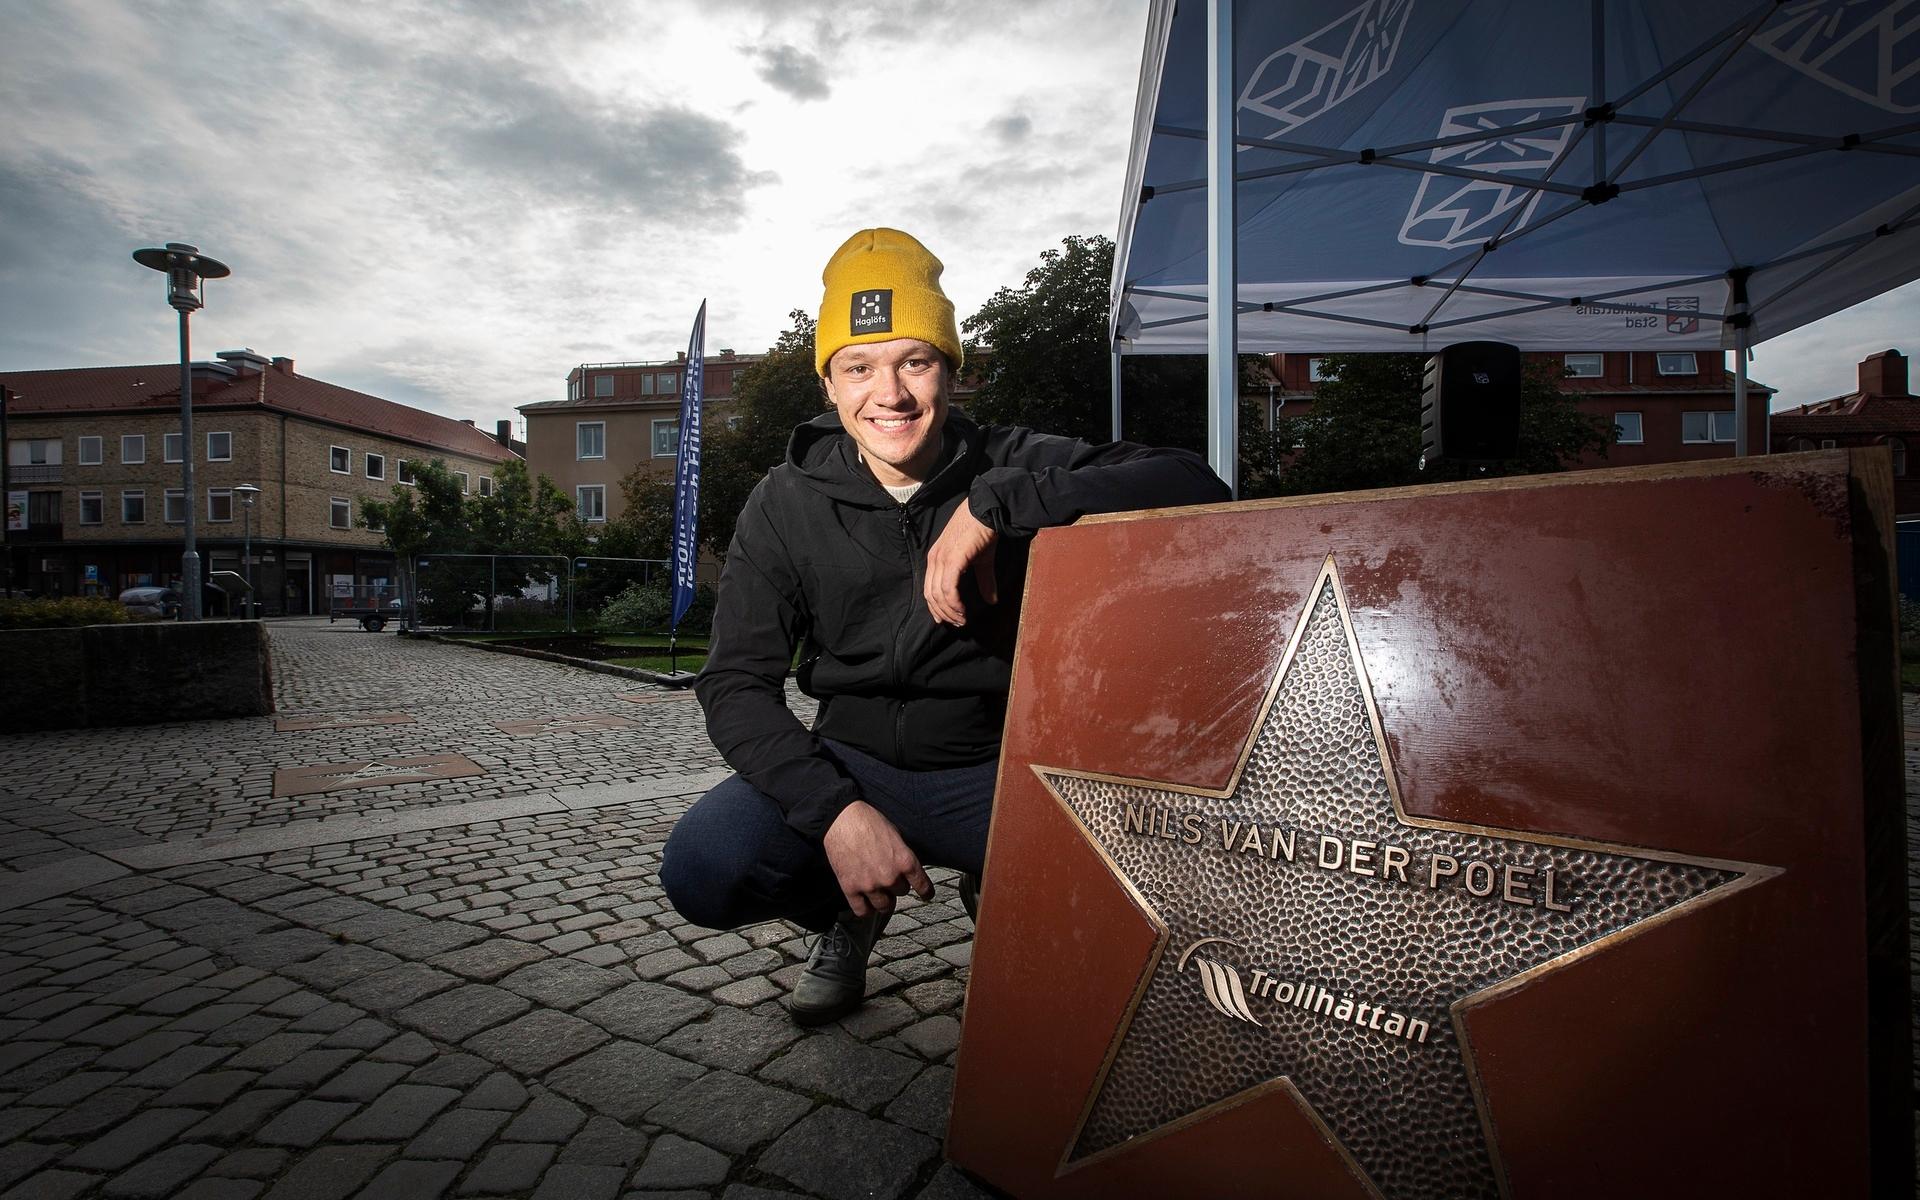 Nils van der Poel med en alldeles egen stjärnplatta i Park of Fame, efter dubbla VM-guld och världsrekord på 10 000 meter.